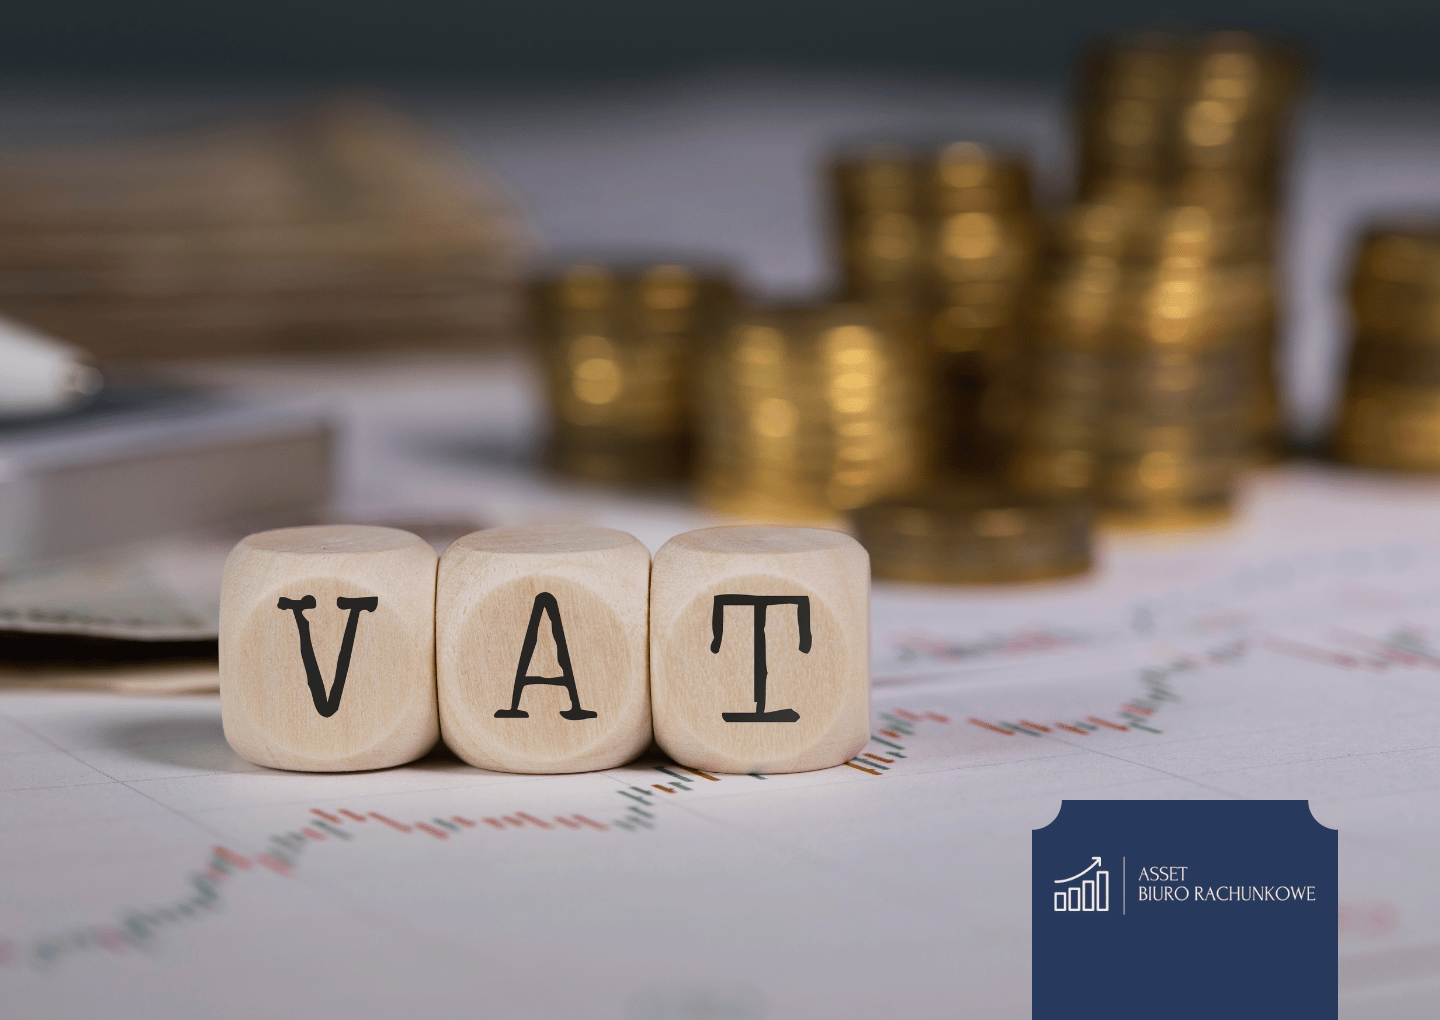 Biuro rachunkowe Asset - czy opłaca się być VATowcem